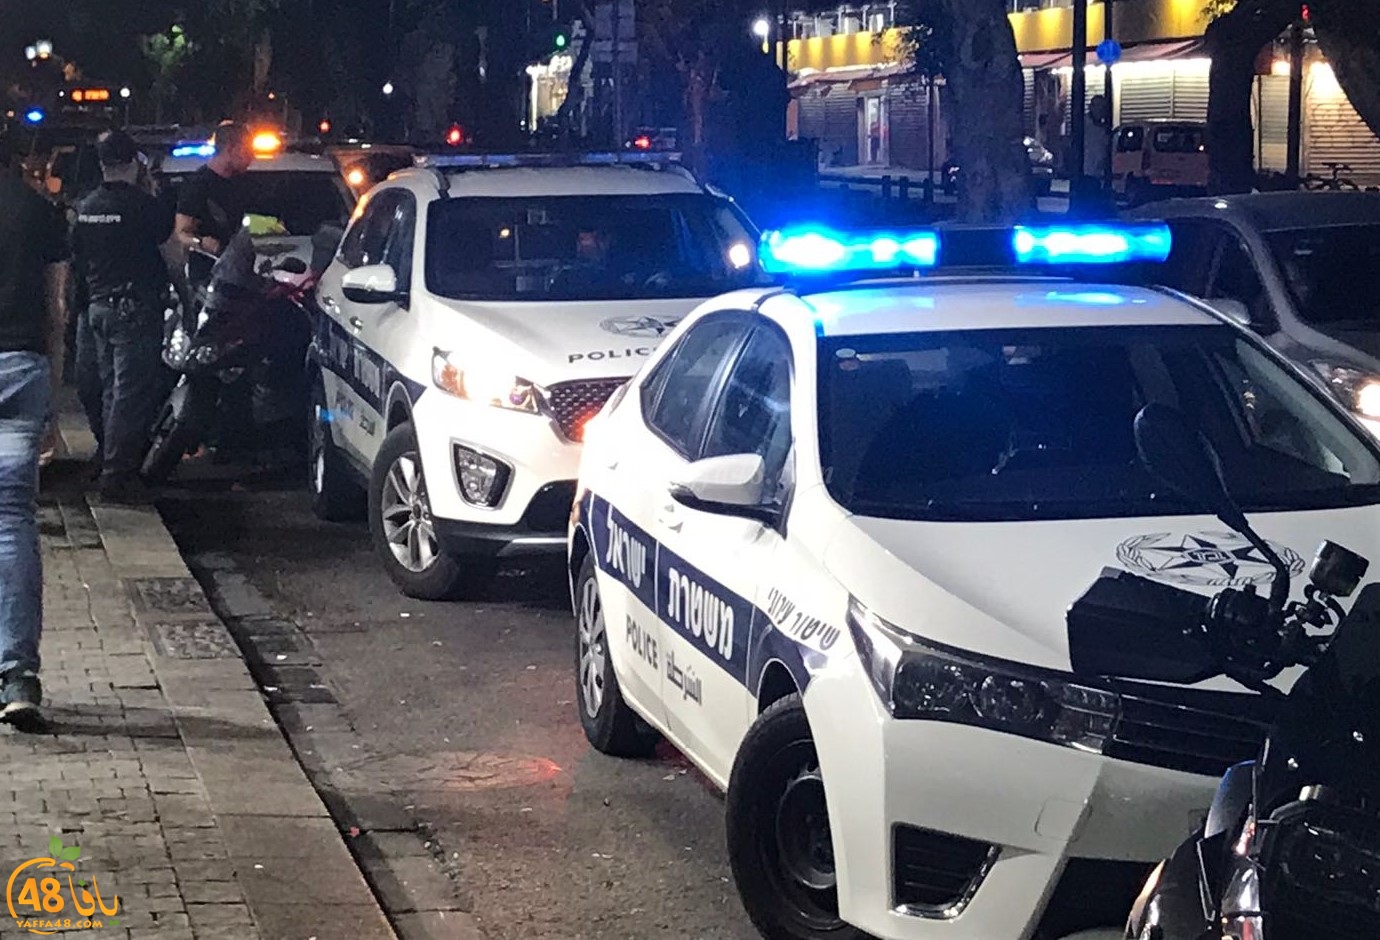 يافا: رغم حواجز الشرطة - أكثر من 10 مصابين خلال اسبوع بحوادث اطلاق نار وطعن بيافا واللد